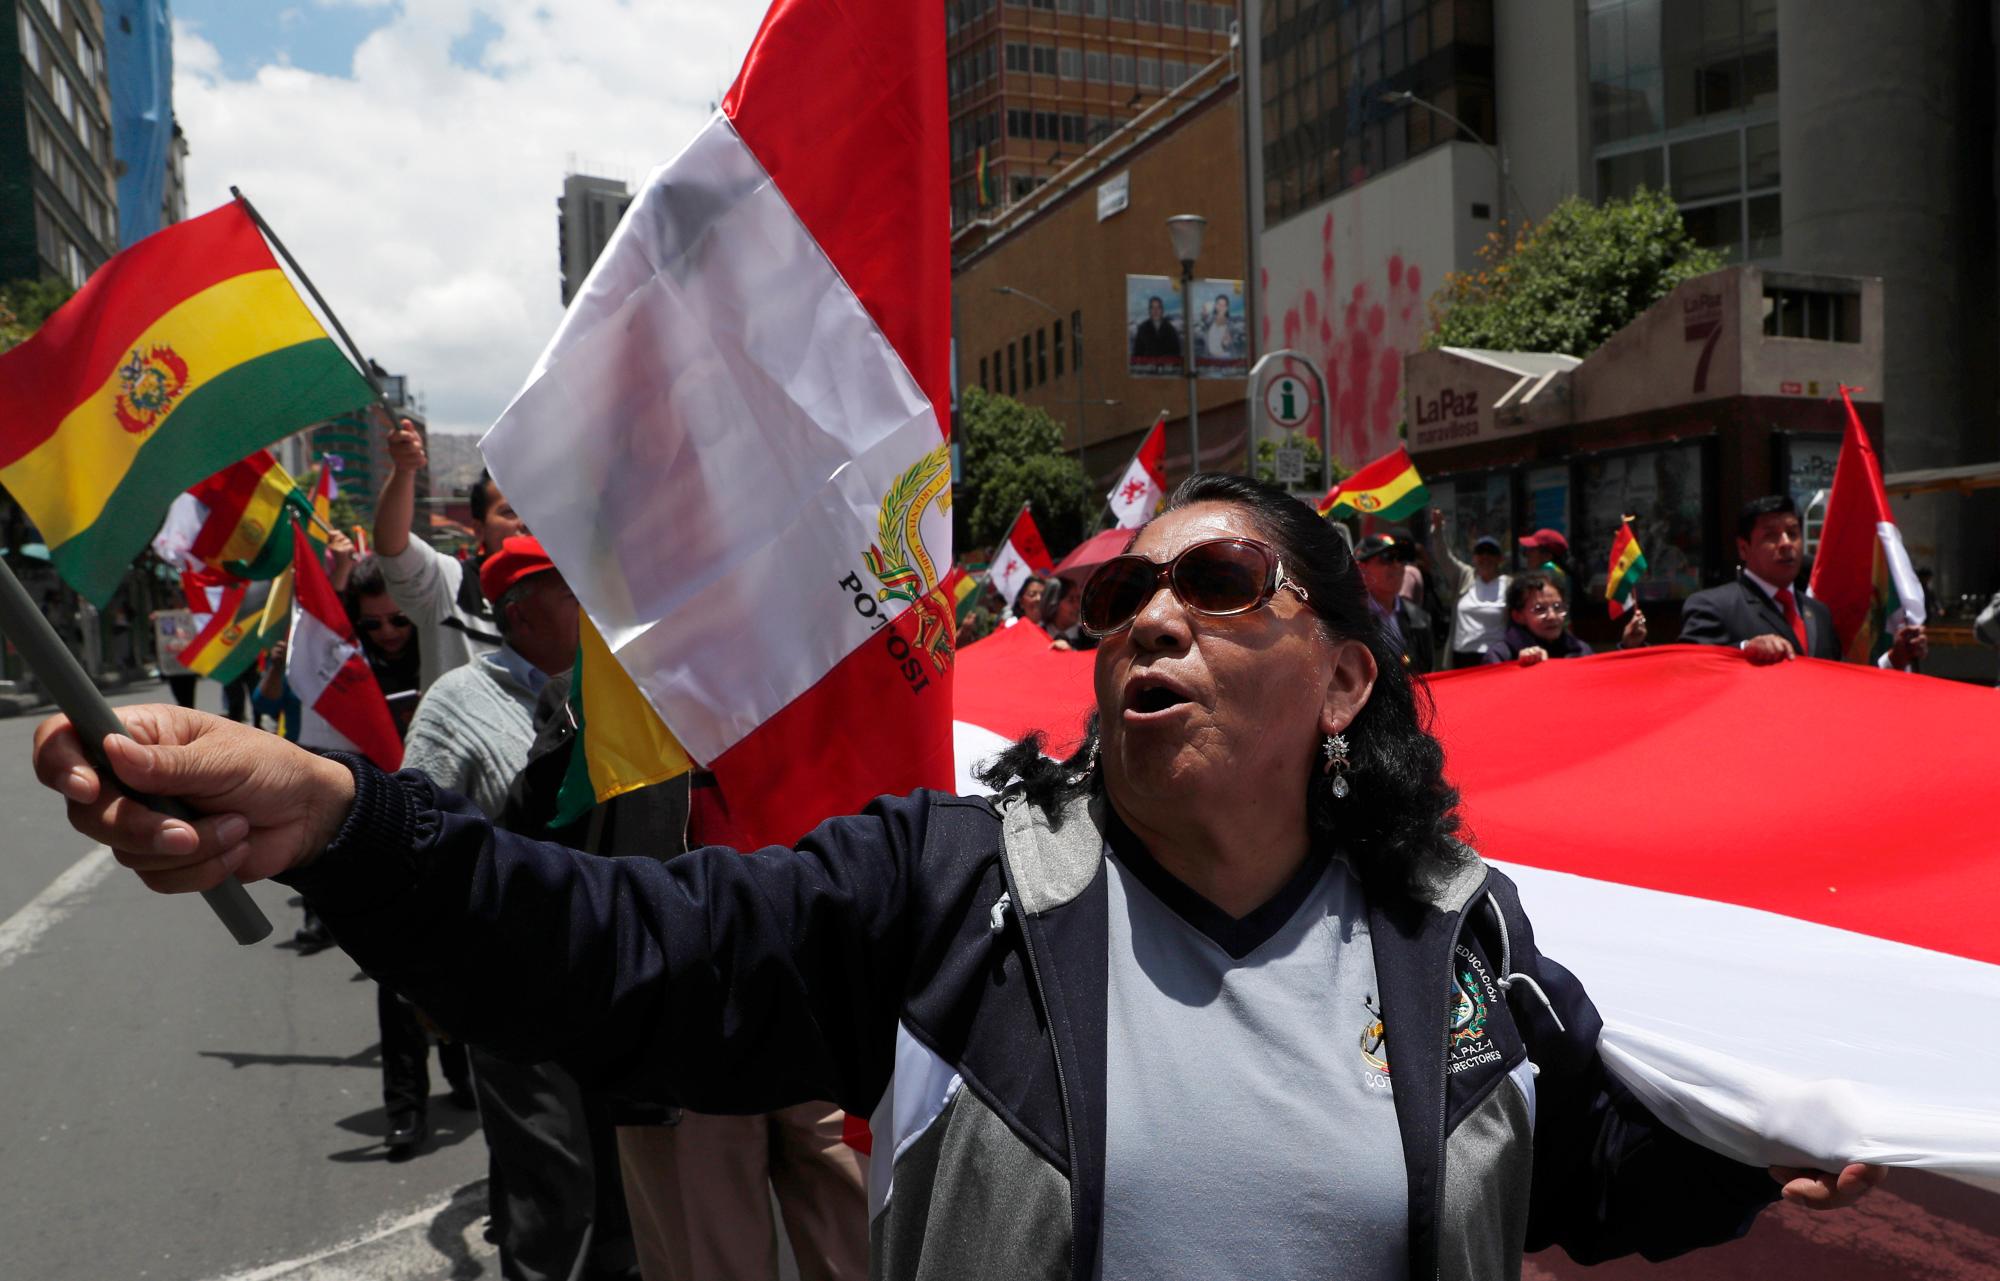 Manifestantes antigubernamentales marchan contra la reelección del presidente Evo Morales en La Paz, Bolivia, el domingo 10 de noviembre de 2019. El presidente Morales está llamando a nuevas elecciones presidenciales y una reforma del sistema electoral el domingo después de un informe preliminar de la Organización de Los estados americanos encontraron irregularidades en las elecciones del 20 de octubre.